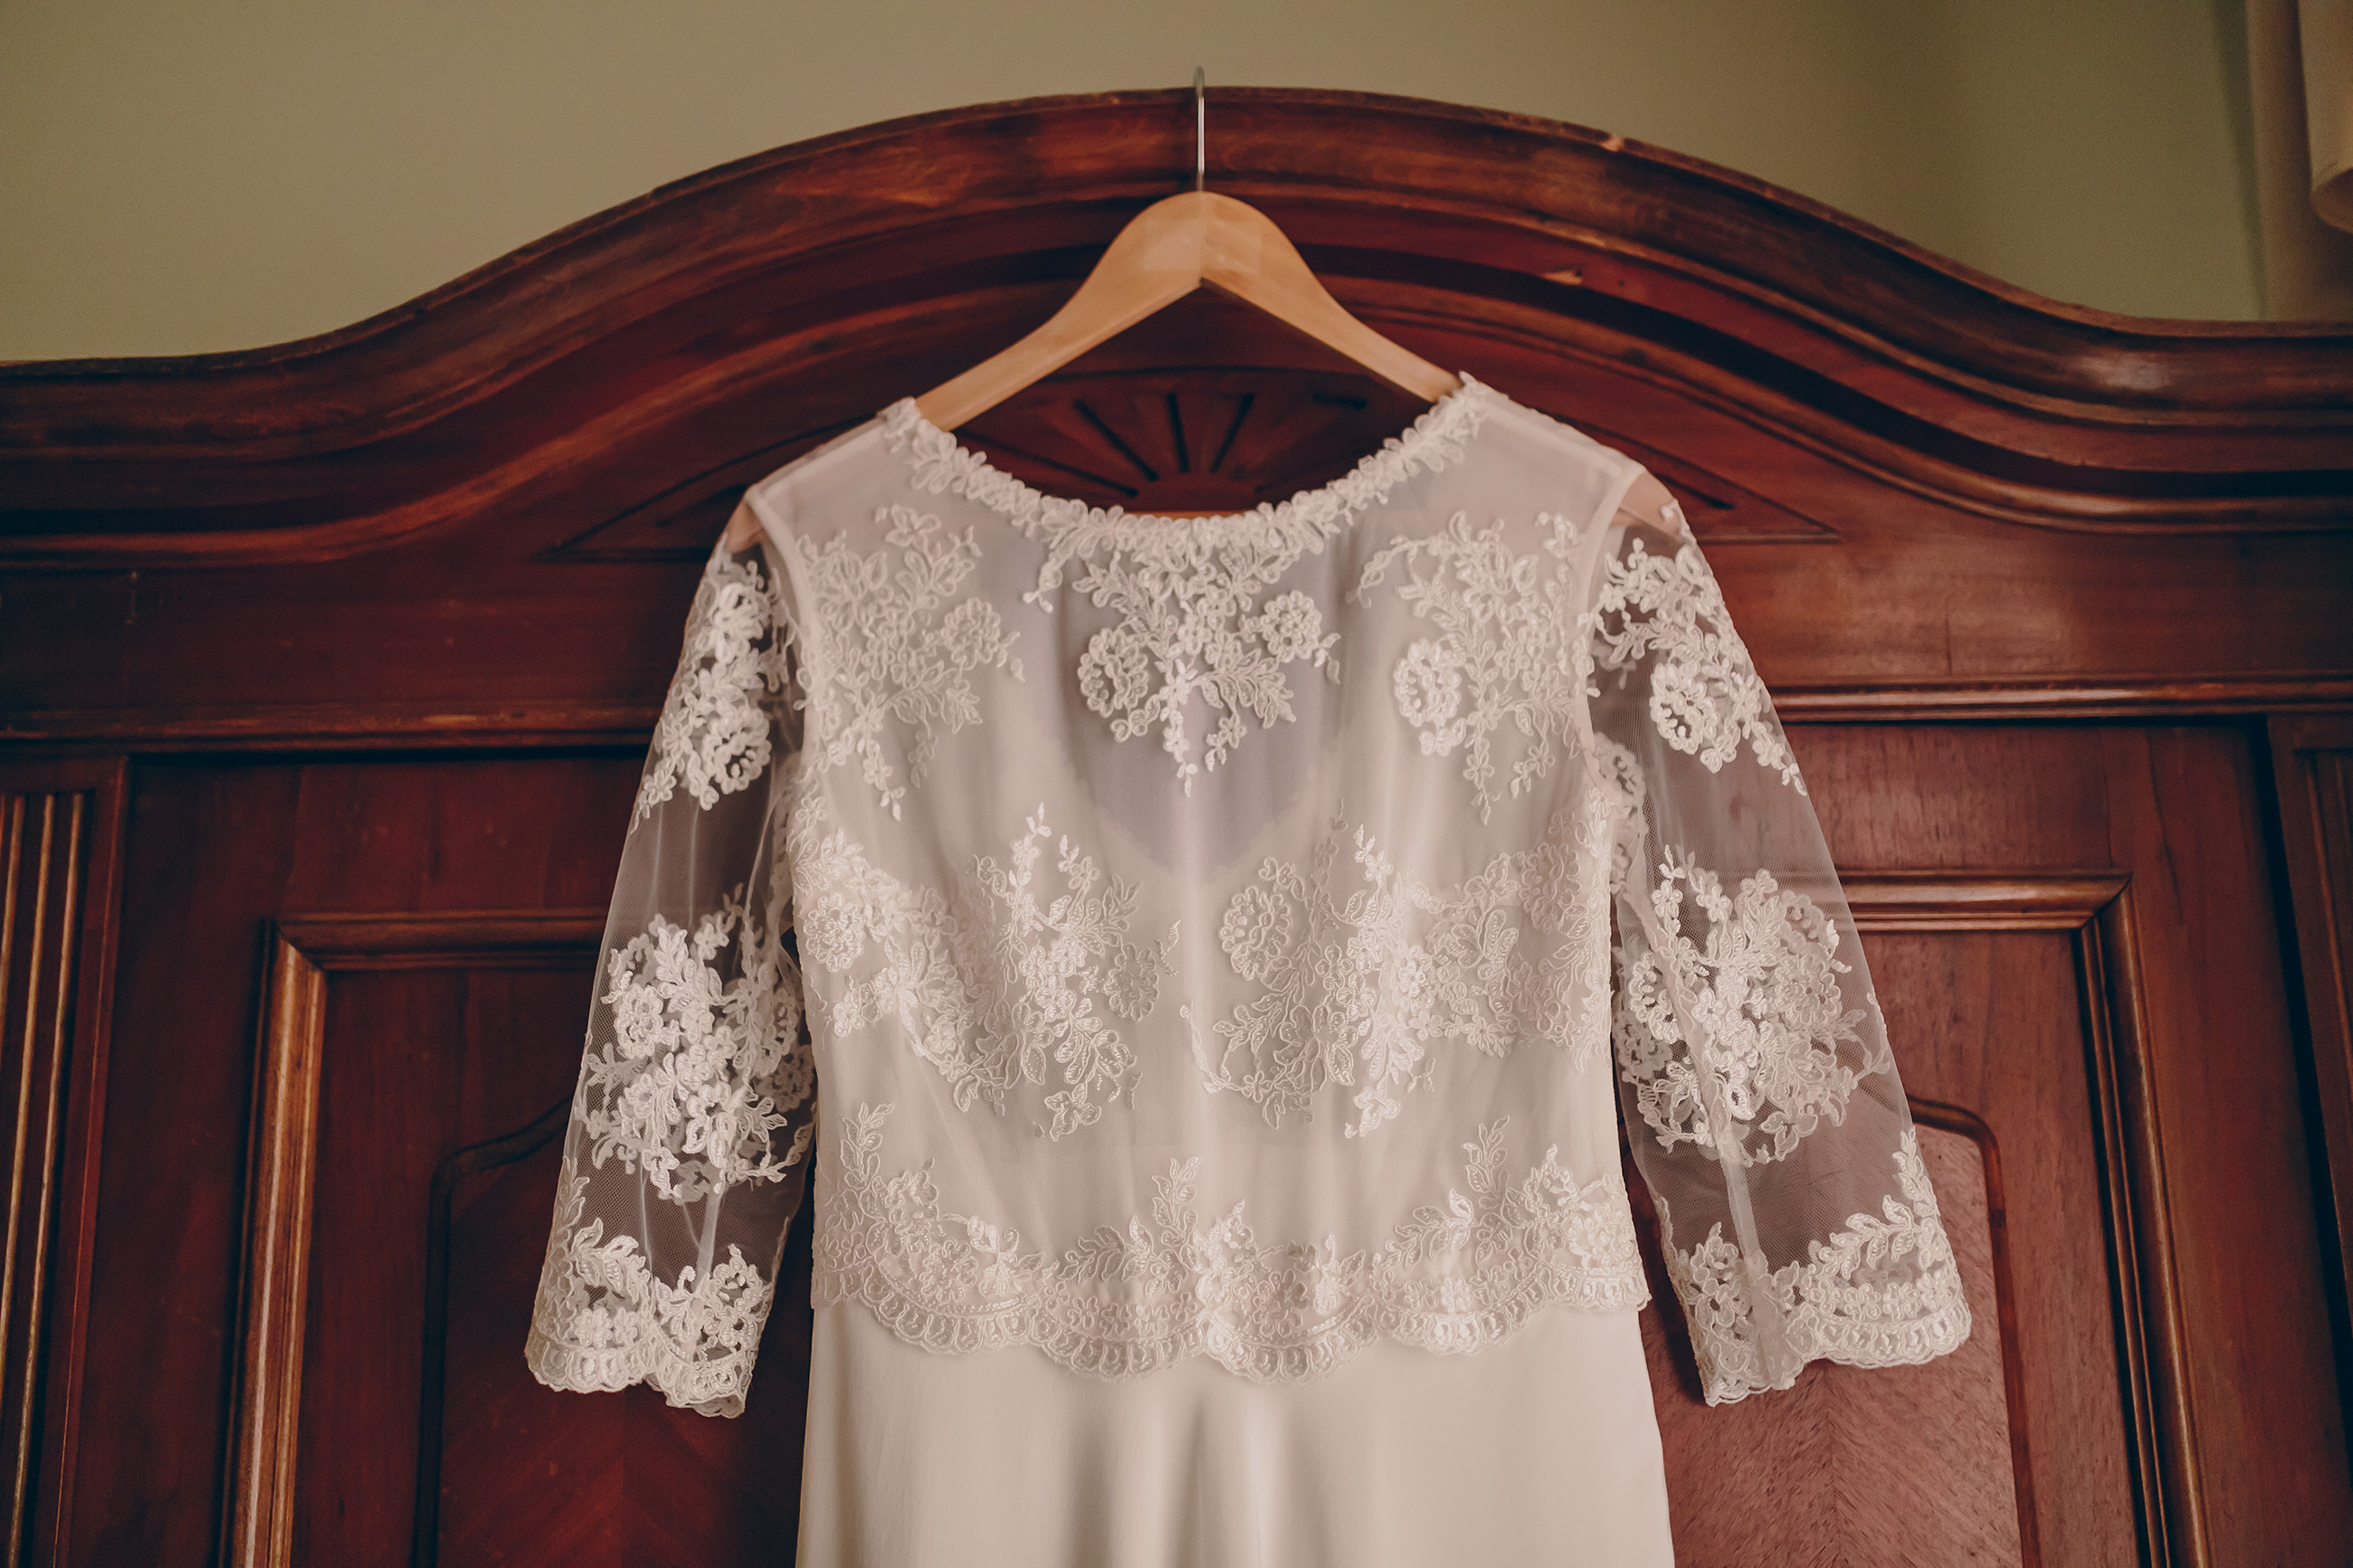 A wedding dress on a hanger | Source: Shutterstock